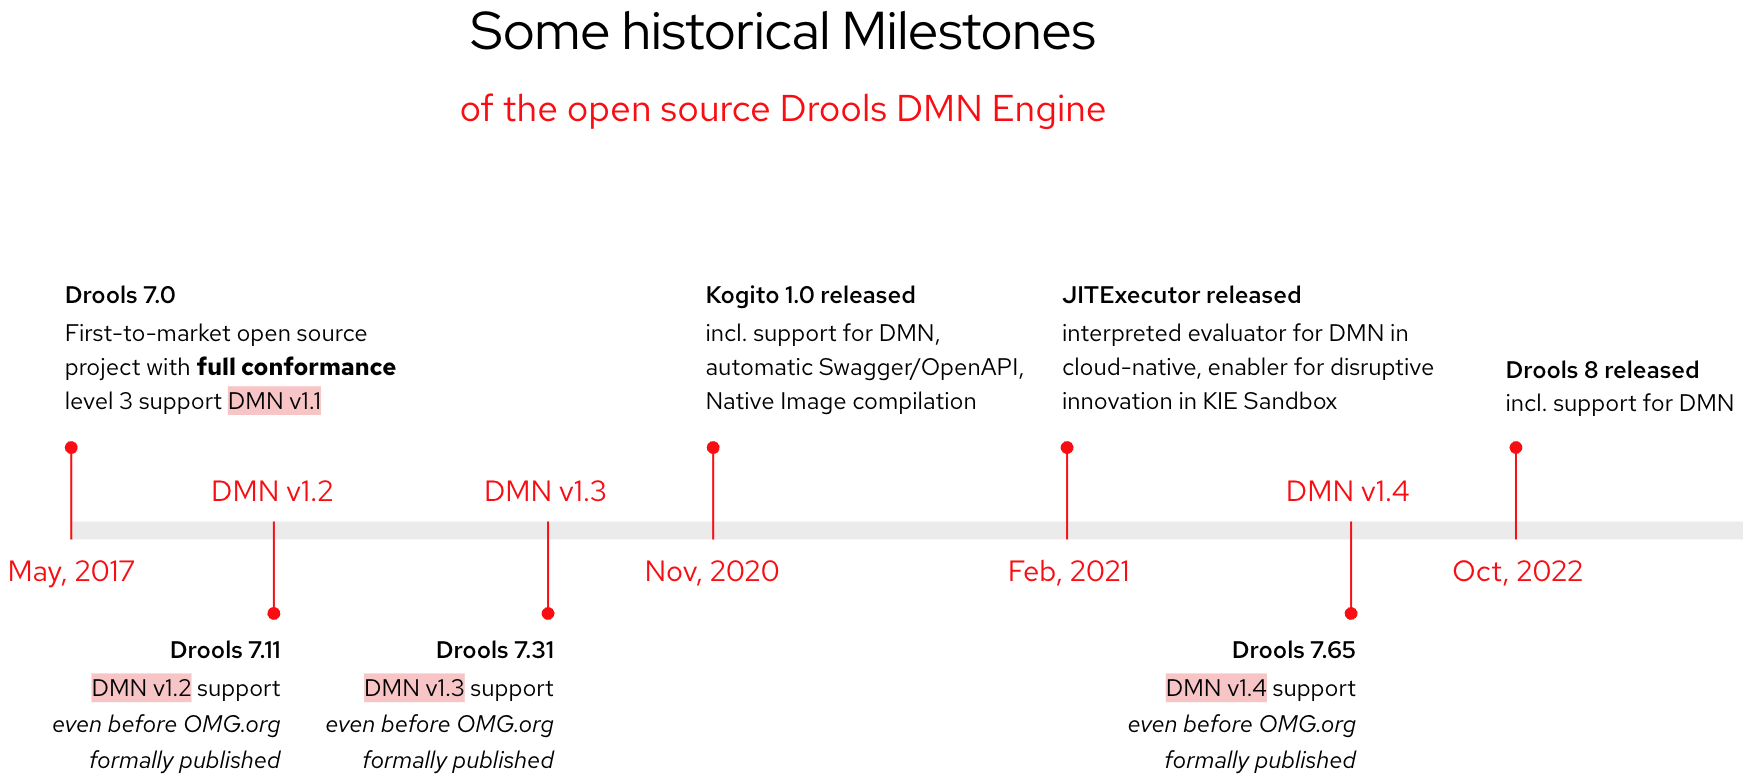 Drools DMN engine historical milestones